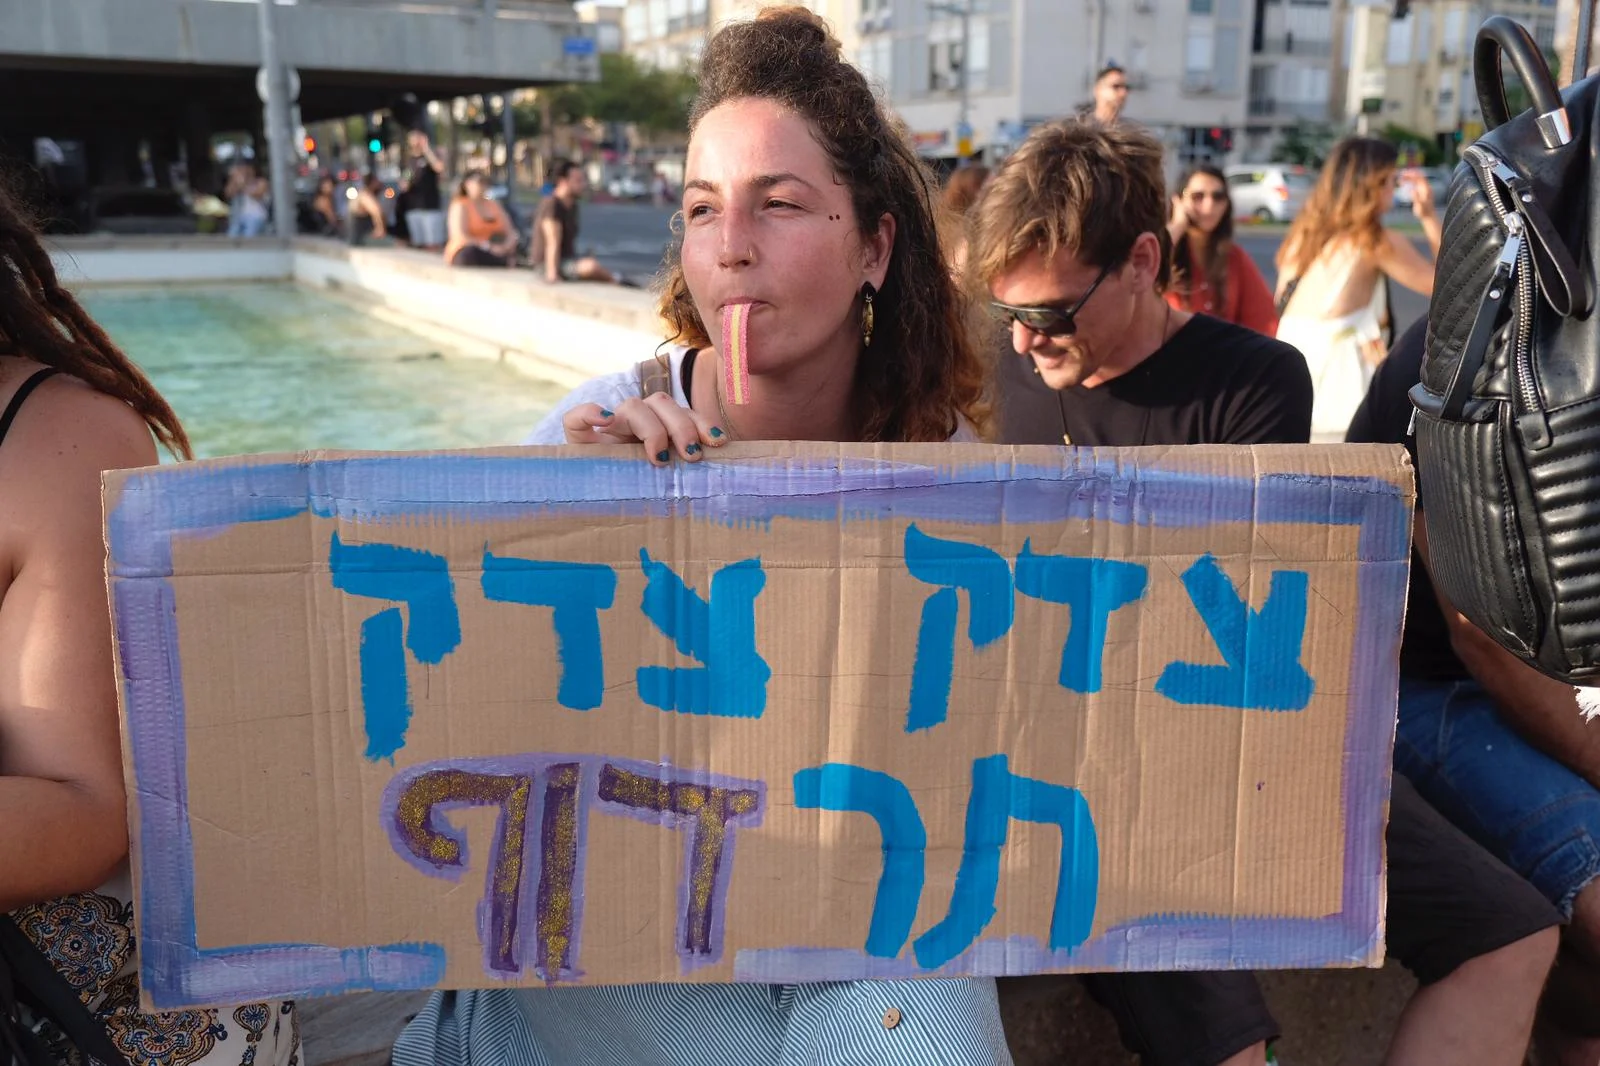 הפגנה נגד ביטול הפסטיבל, כיכר רבין